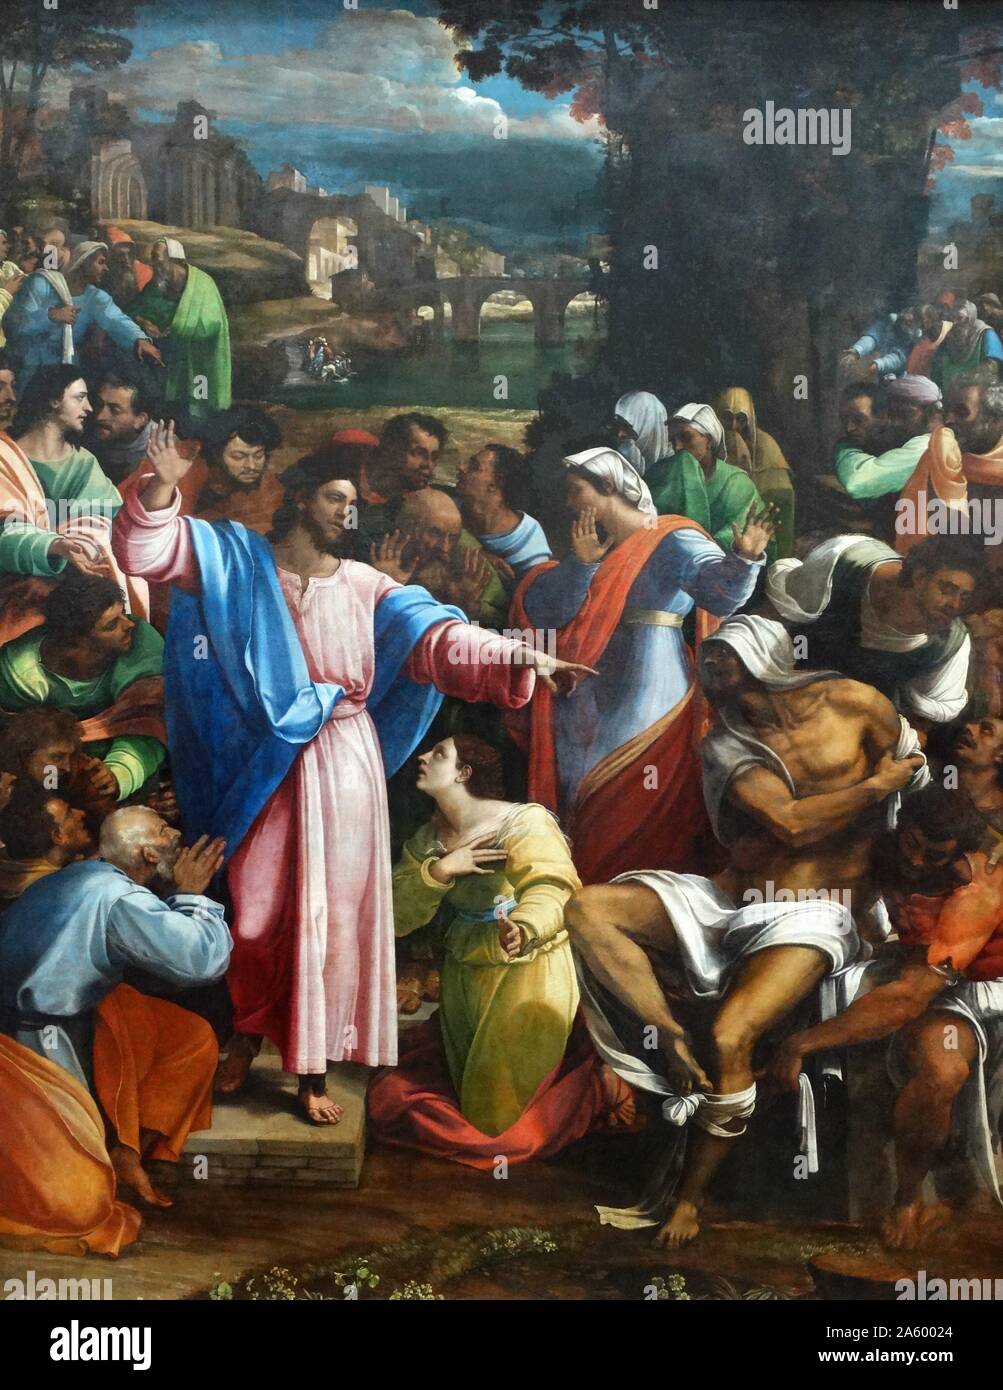 Gemälde mit dem Titel "Anhebung des Lazarus" von Sebastiano del Piombo (1485-1547), italienischer Maler der Hochrenaissance und frühen manieristischen Perioden. Datiert aus dem 16. Jahrhundert Stockfoto